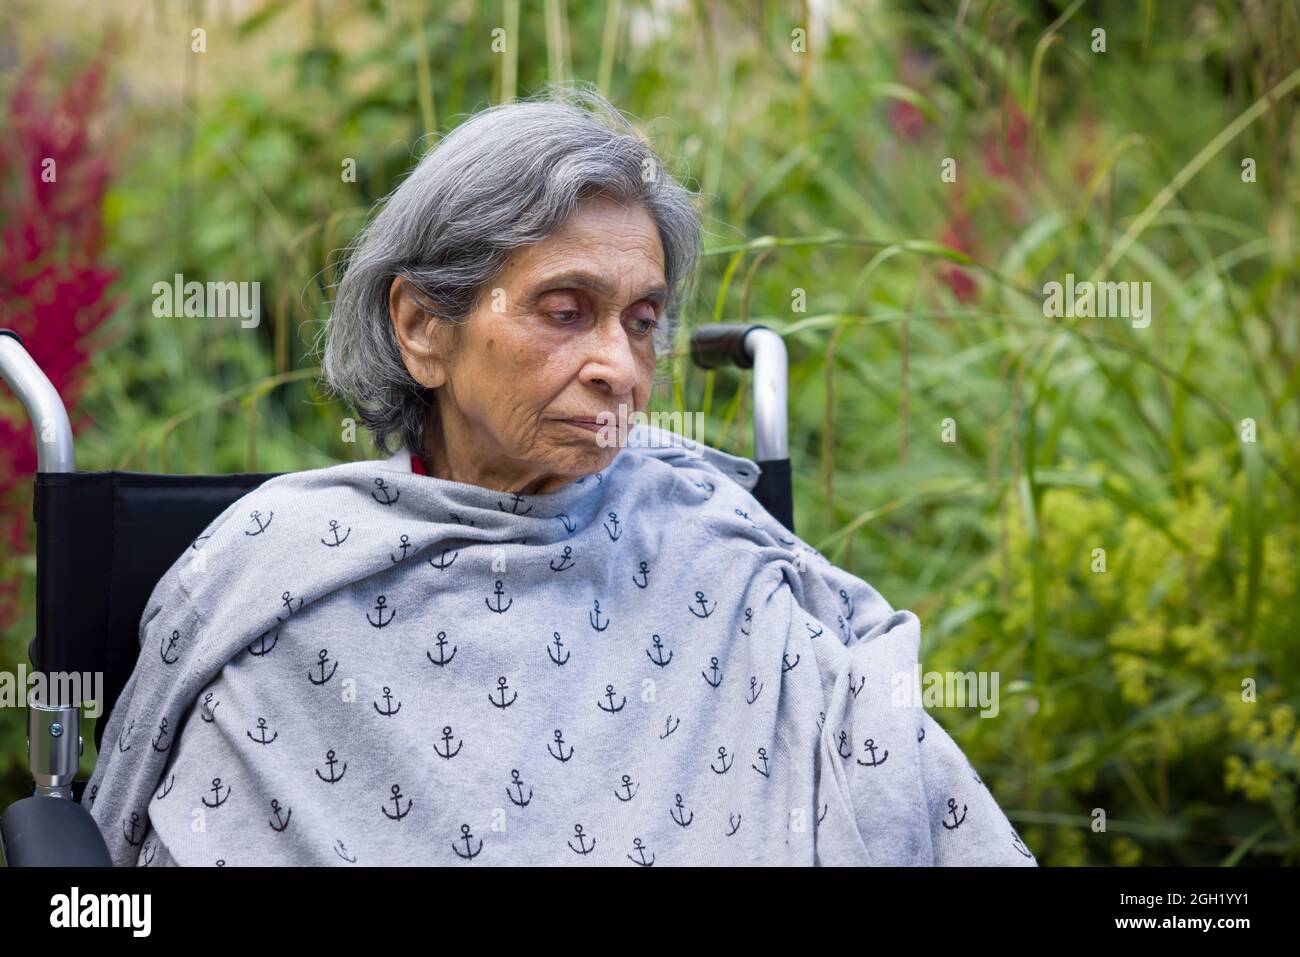 Vieille femme indienne assise dans un fauteuil roulant dans un jardin britannique, qui a l'air triste ou déprimée. Représente la santé mentale, la dépression et la maladie chez les personnes âgées Banque D'Images